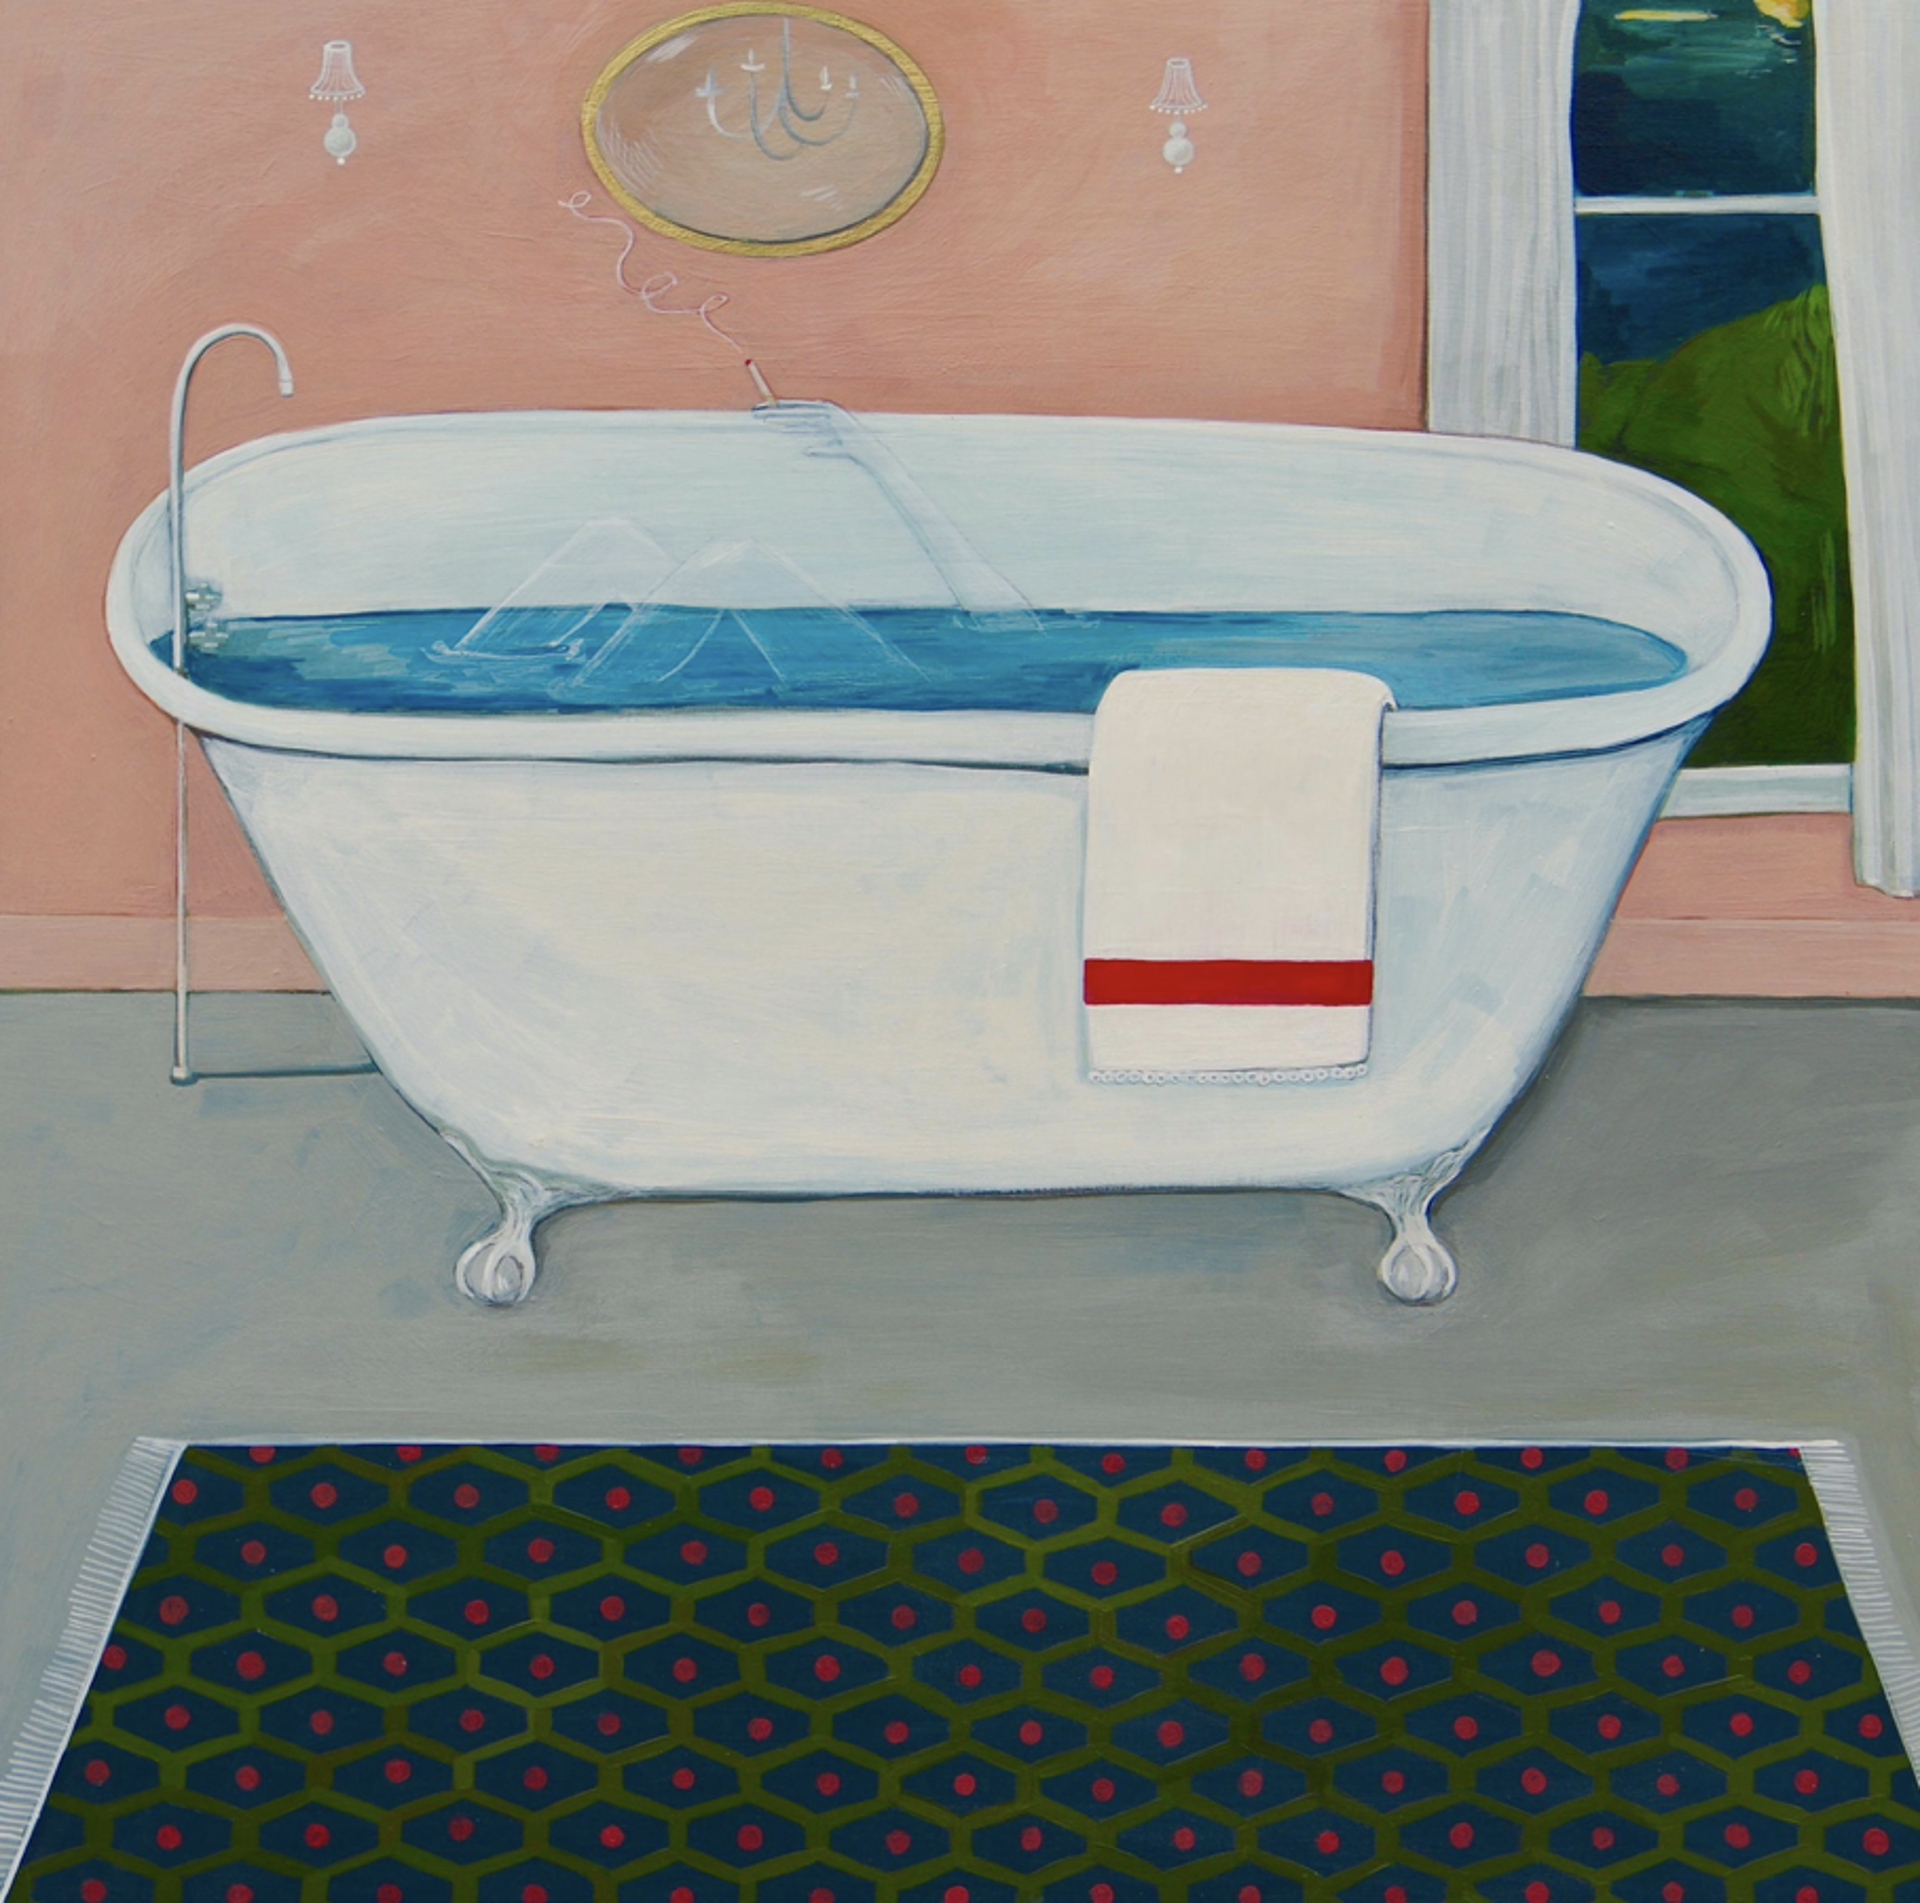 Ghost in the Bathtub by Angela Burson